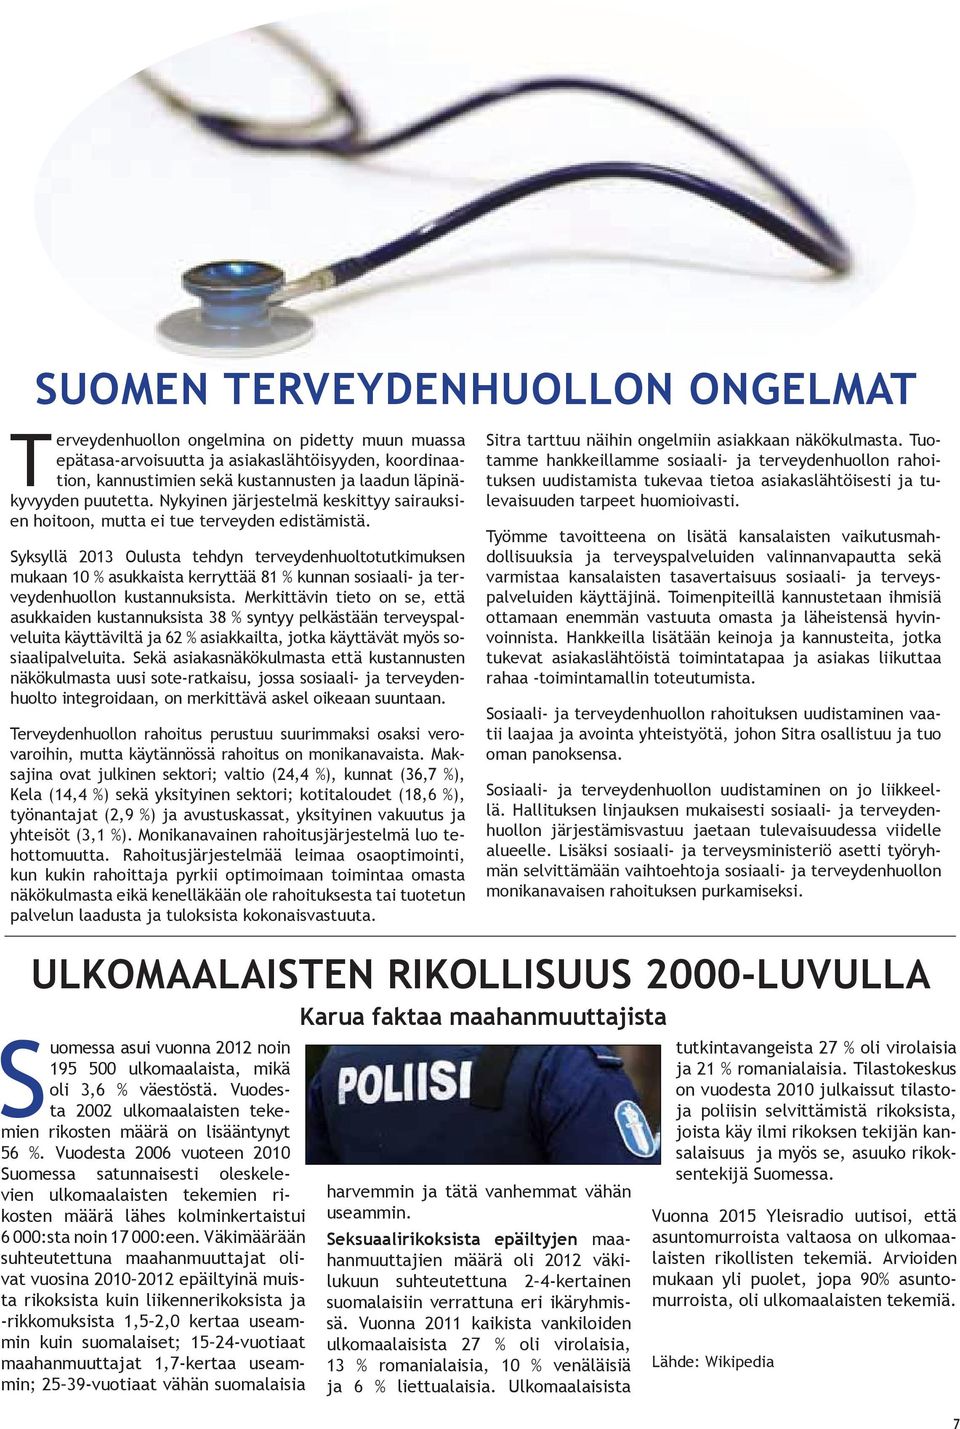 Syksyllä 2013 Oulusta tehdyn terveydenhuoltotutkimuksen mukaan 10 % asukkaista kerryttää 81 % kunnan sosiaali- ja terveydenhuollon kustannuksista.